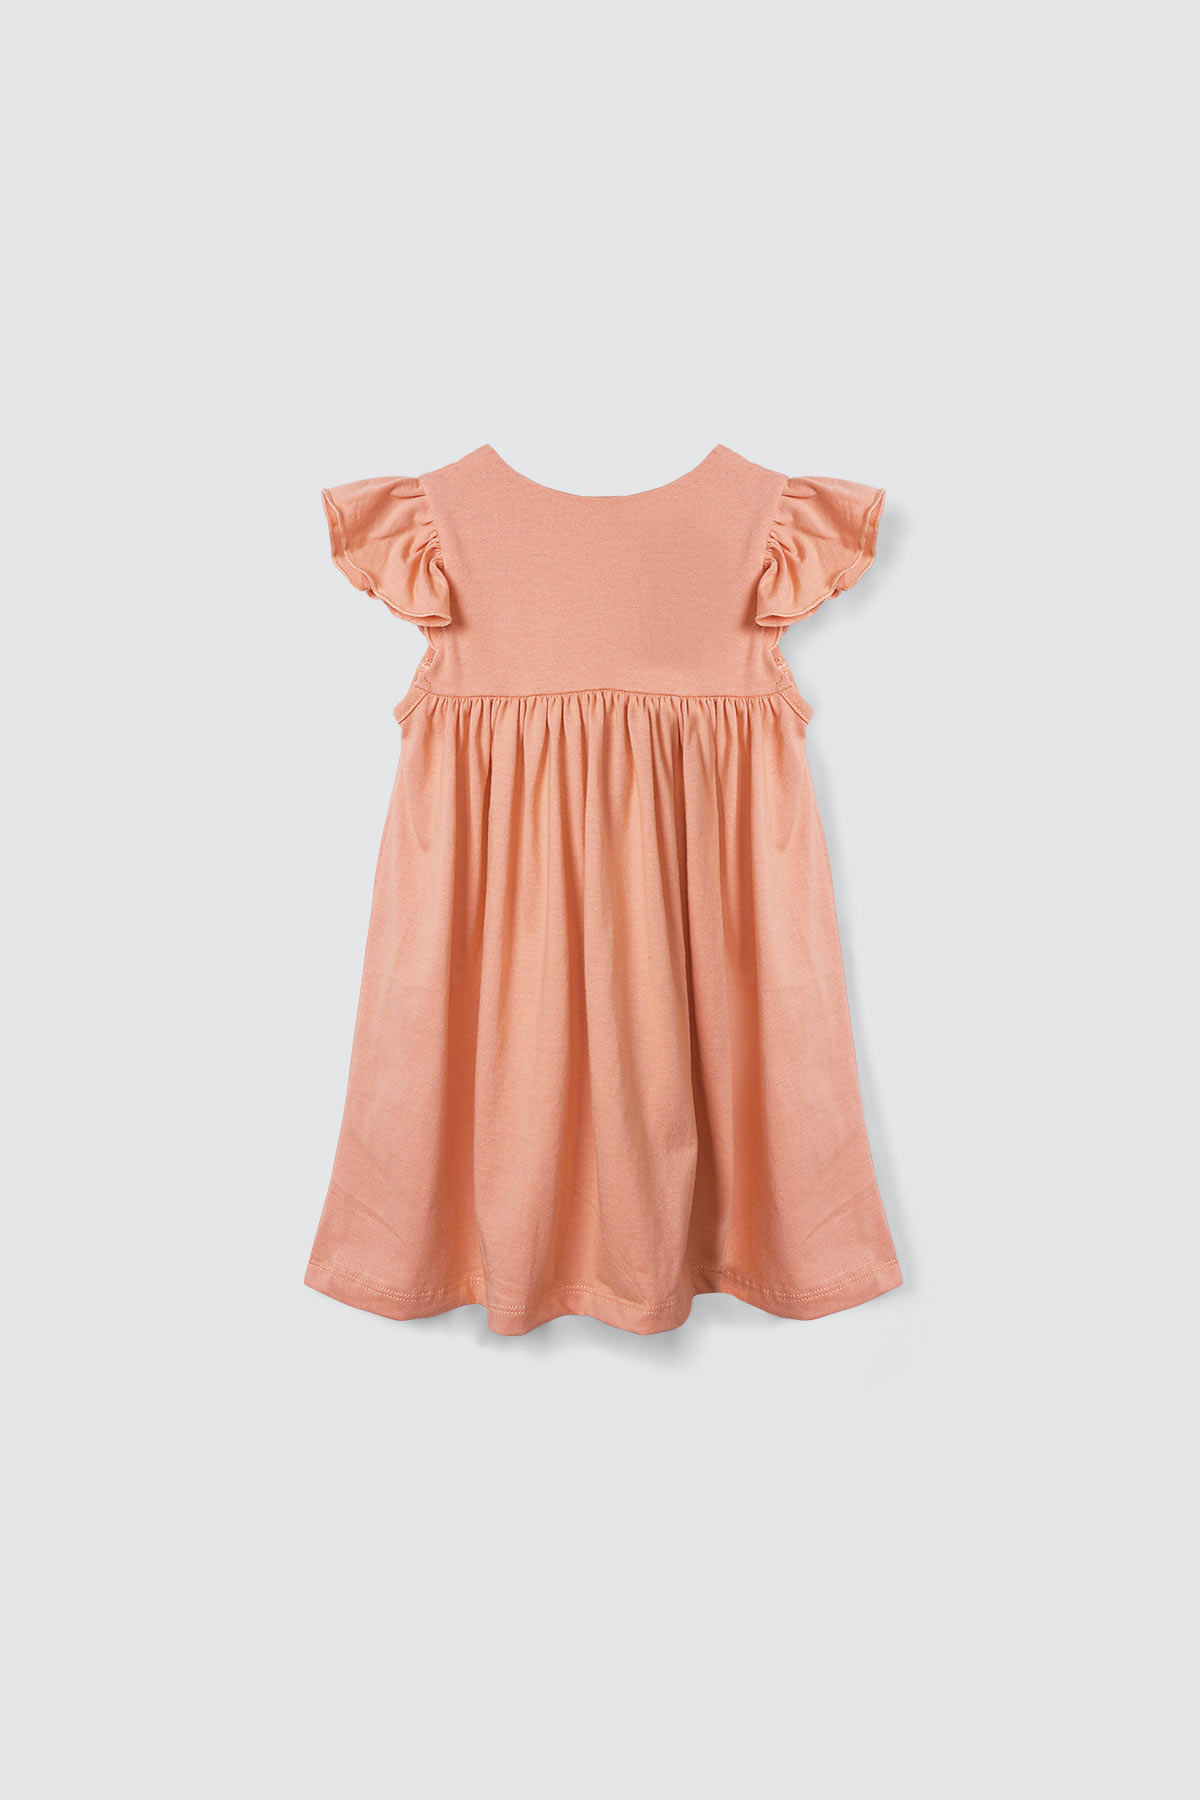 Kimmy Dress Light Coral - Kiddiposh | Official Dress Anak Bimbiekids ...